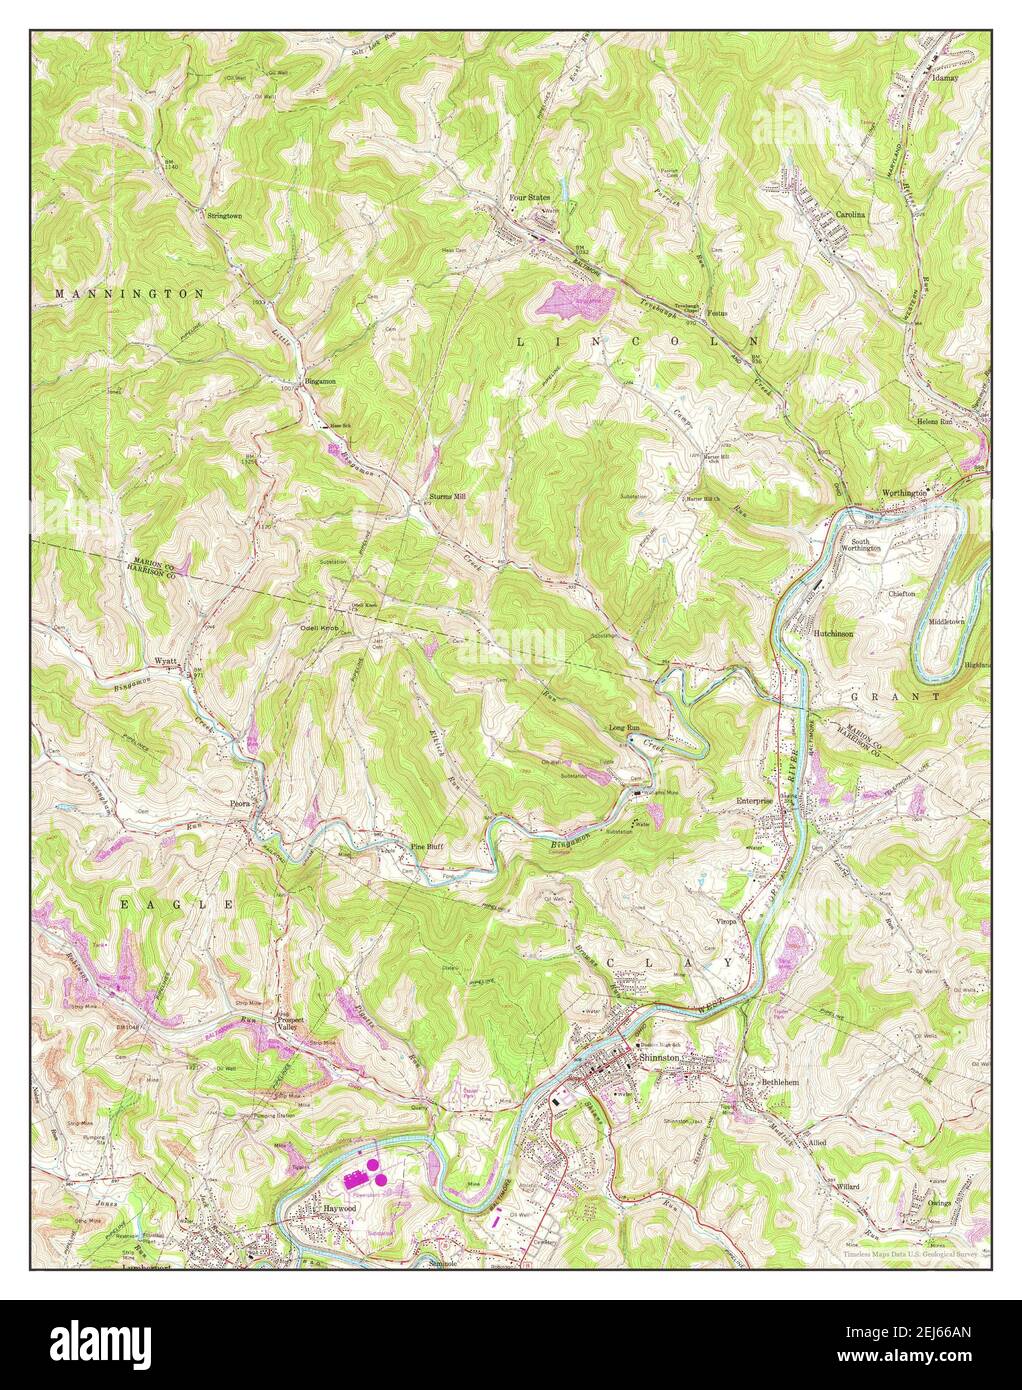 Shinnston, West Virginia, Karte 1960, 1:24000, Vereinigte Staaten von Amerika von Timeless Maps, Daten U.S. Geological Survey Stockfoto